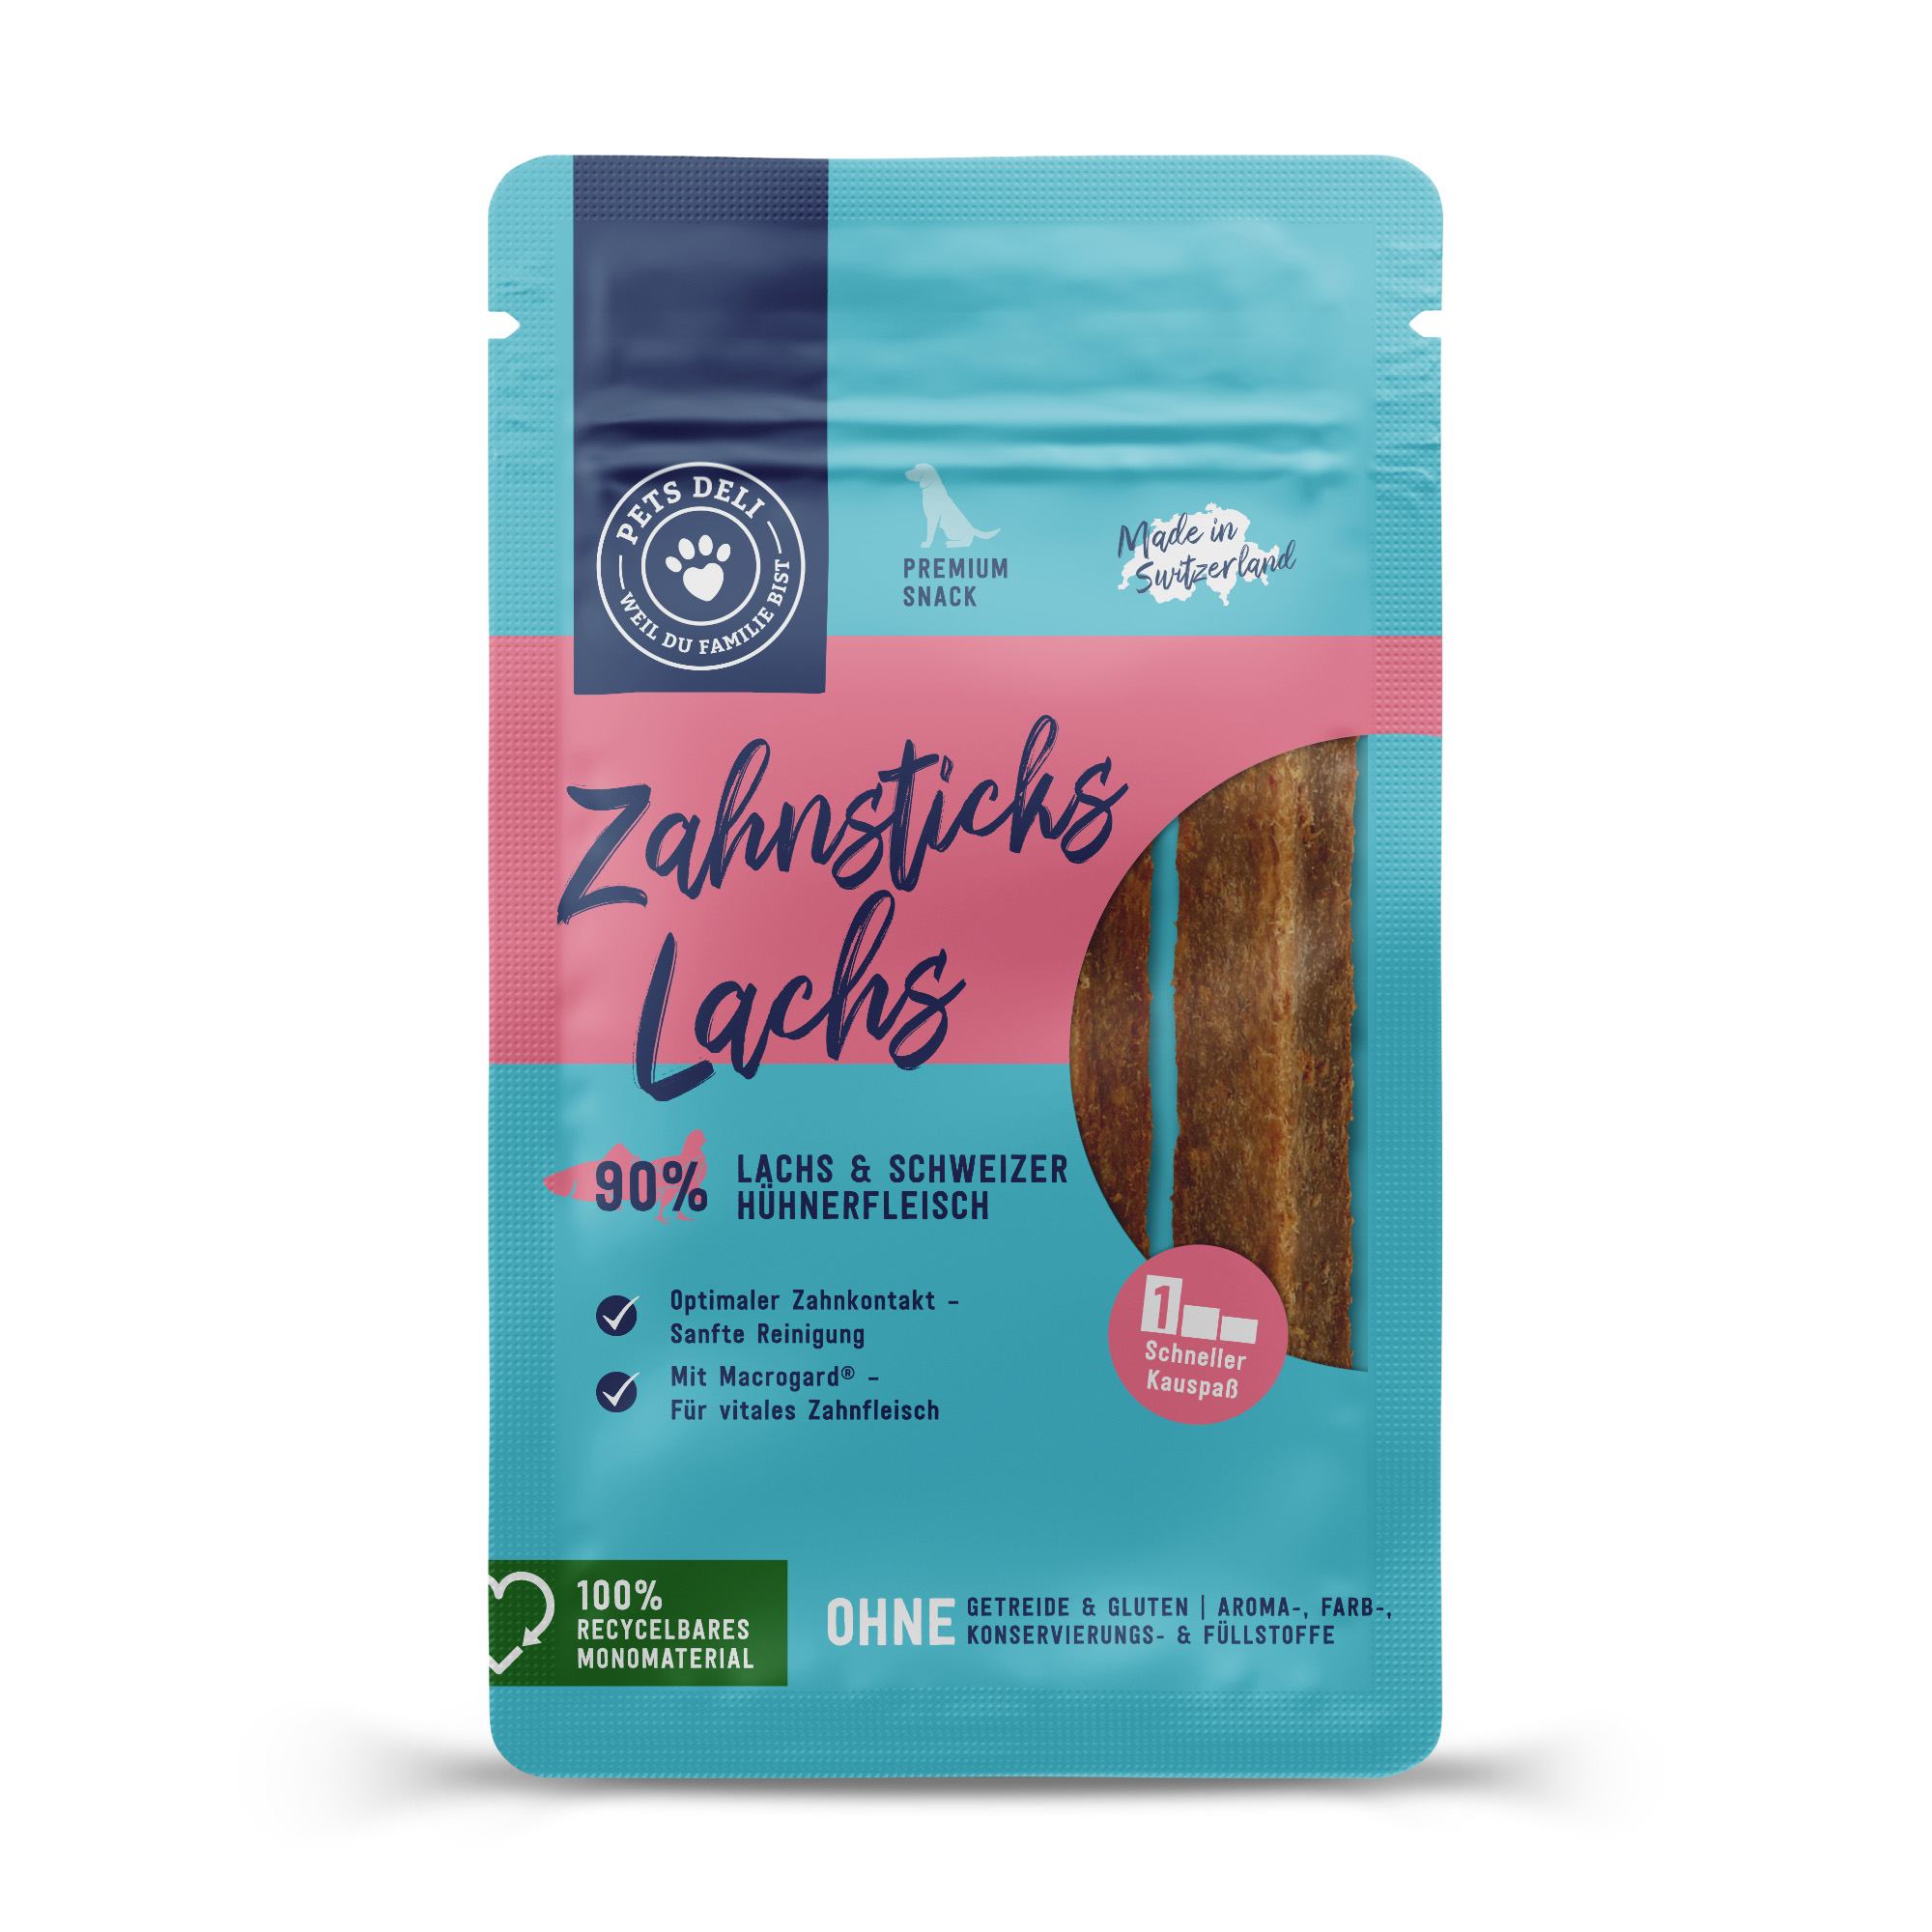 Snack Zahnsticks Lachs für Hunde – 70g